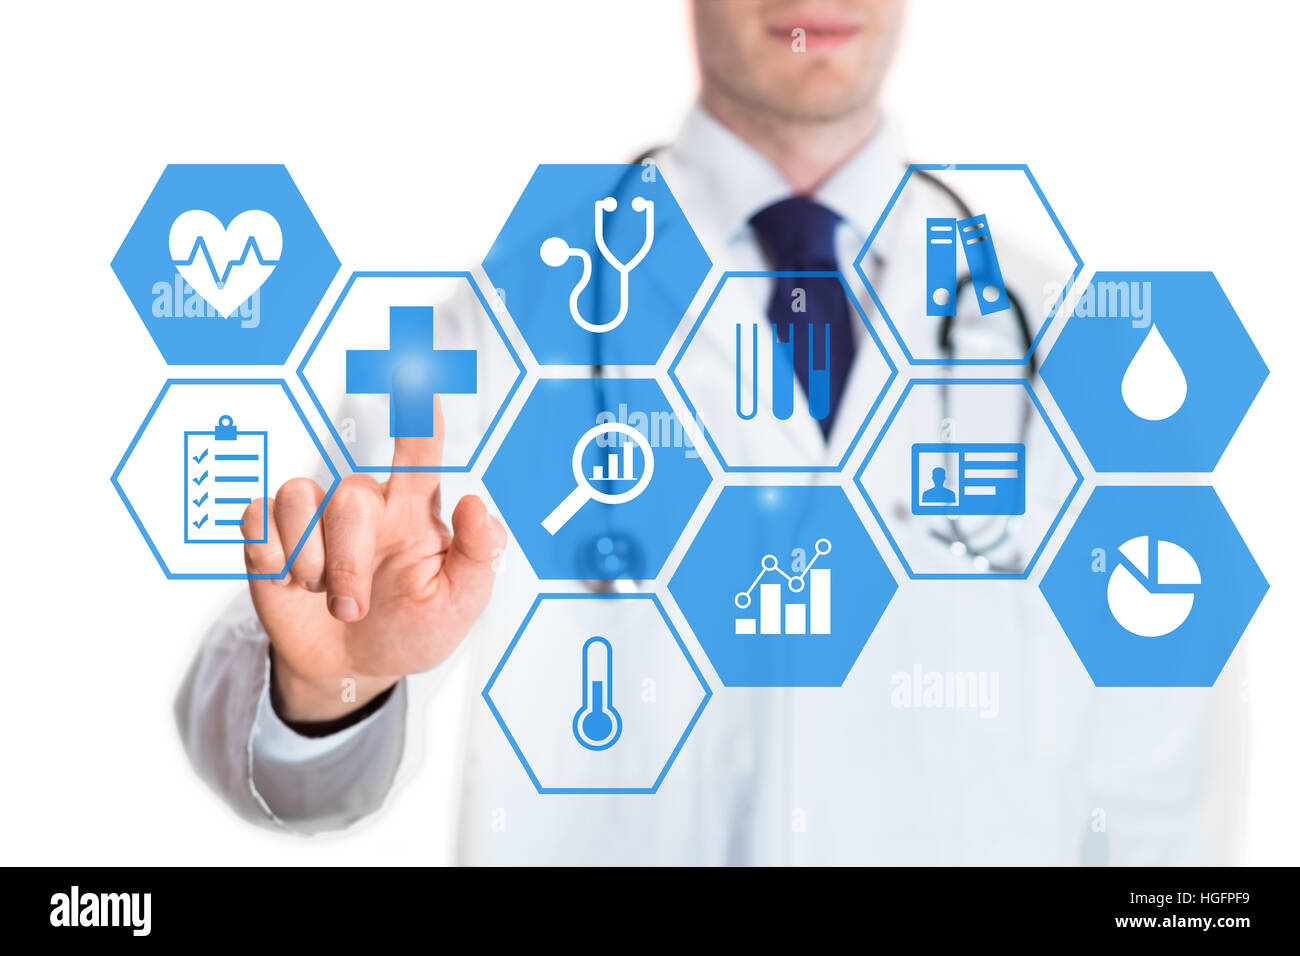 Persönliche Gesundheit Daten Konzept auf einem virtuellen Bildschirm mit Symbolen über Herzfrequenz, Blutdruck, Körpertemperatur und Statistiken und einem Arzt Stockfoto